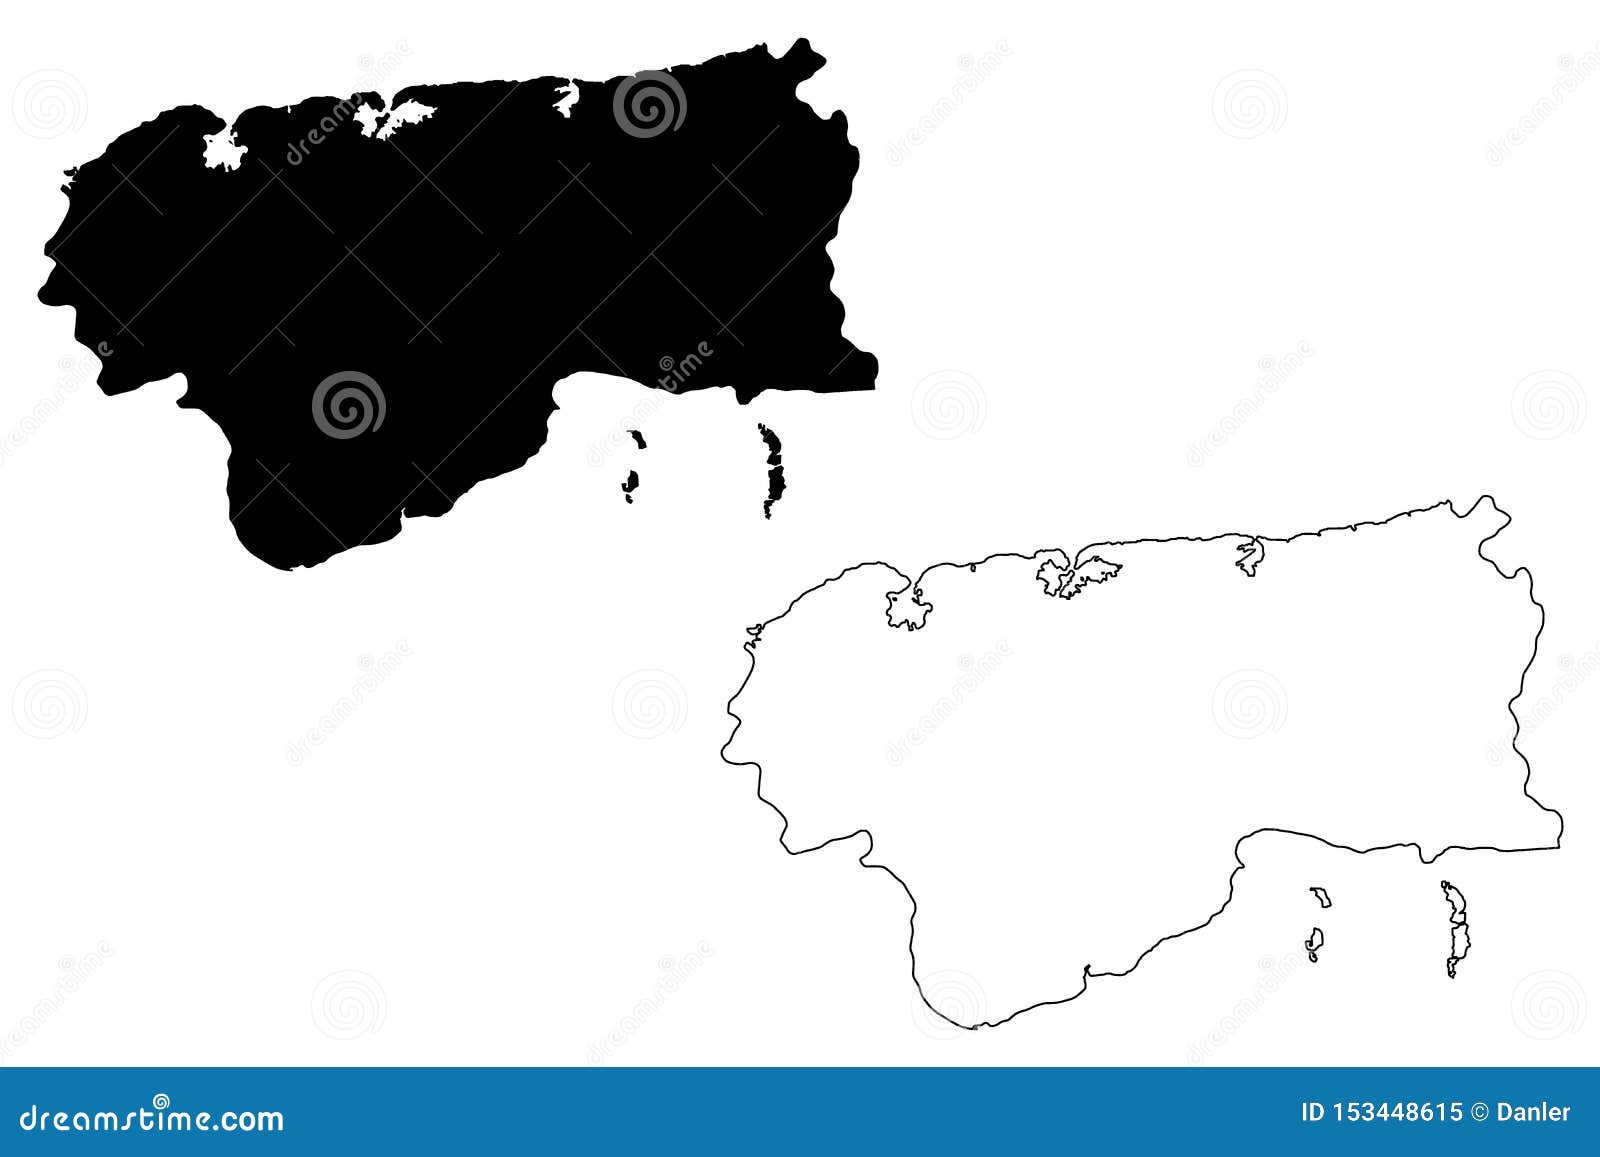 artemisa province republic of cuba, provinces of cuba map  , scribble sketch artemisa map